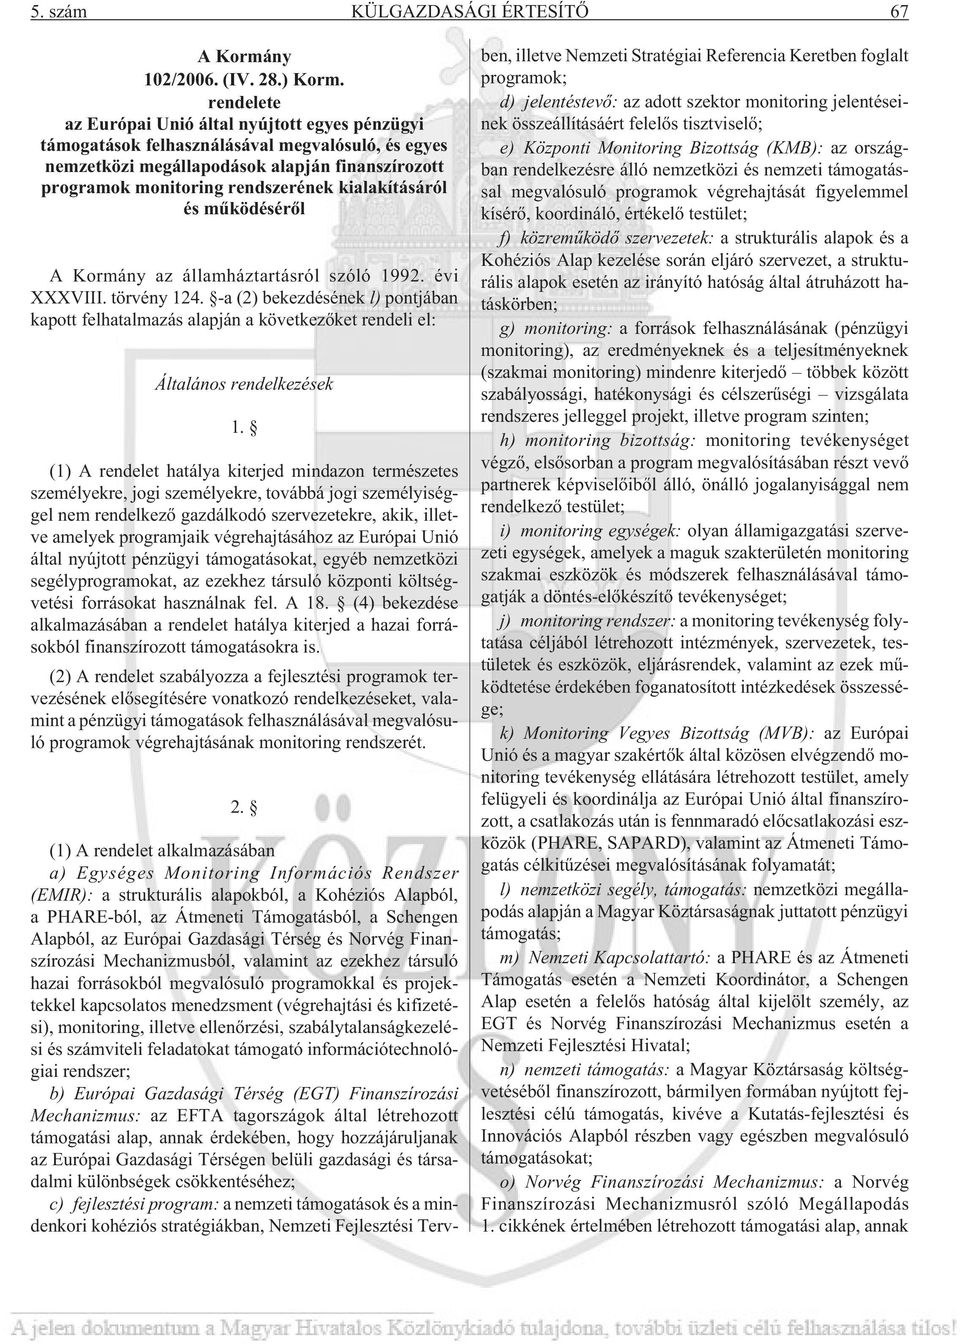 kialakításáról és mûködésérõl A Kormány az államháztartásról szóló 1992. évi XXXVIII. törvény 124.